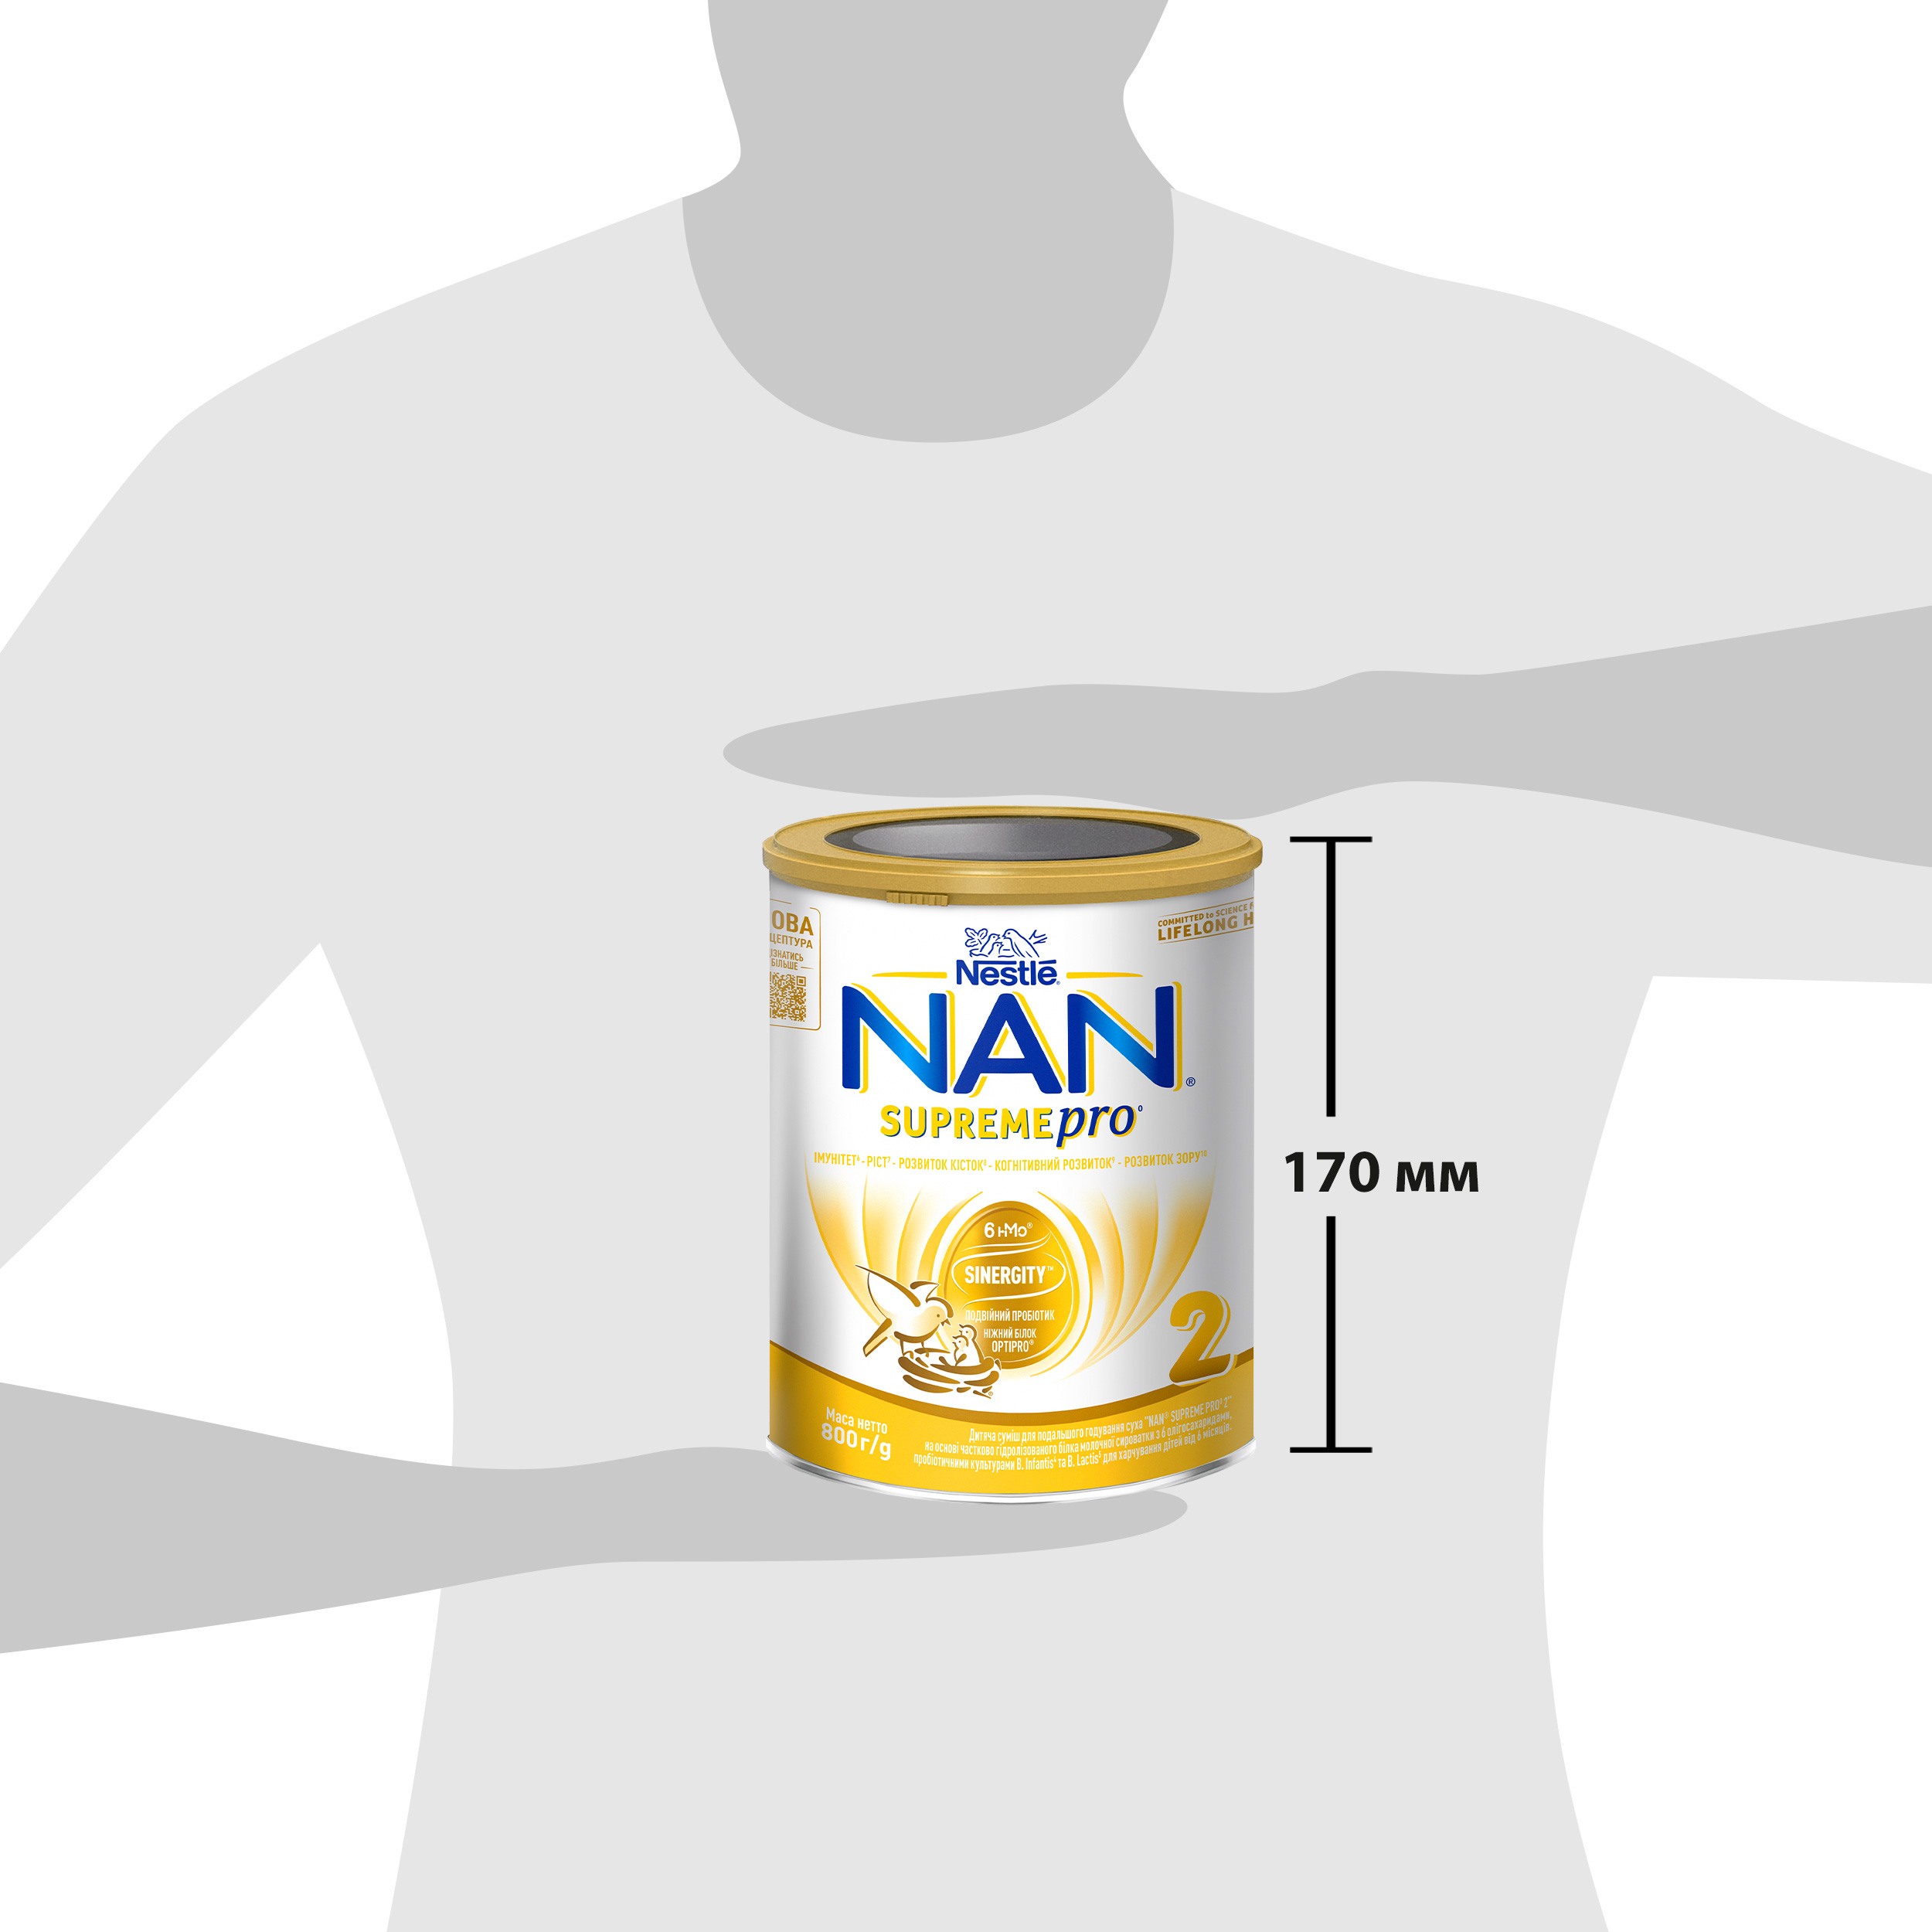 Суха молочна суміш NAN Supreme Pro 2, з олігосахаридами, 800 г - фото 10